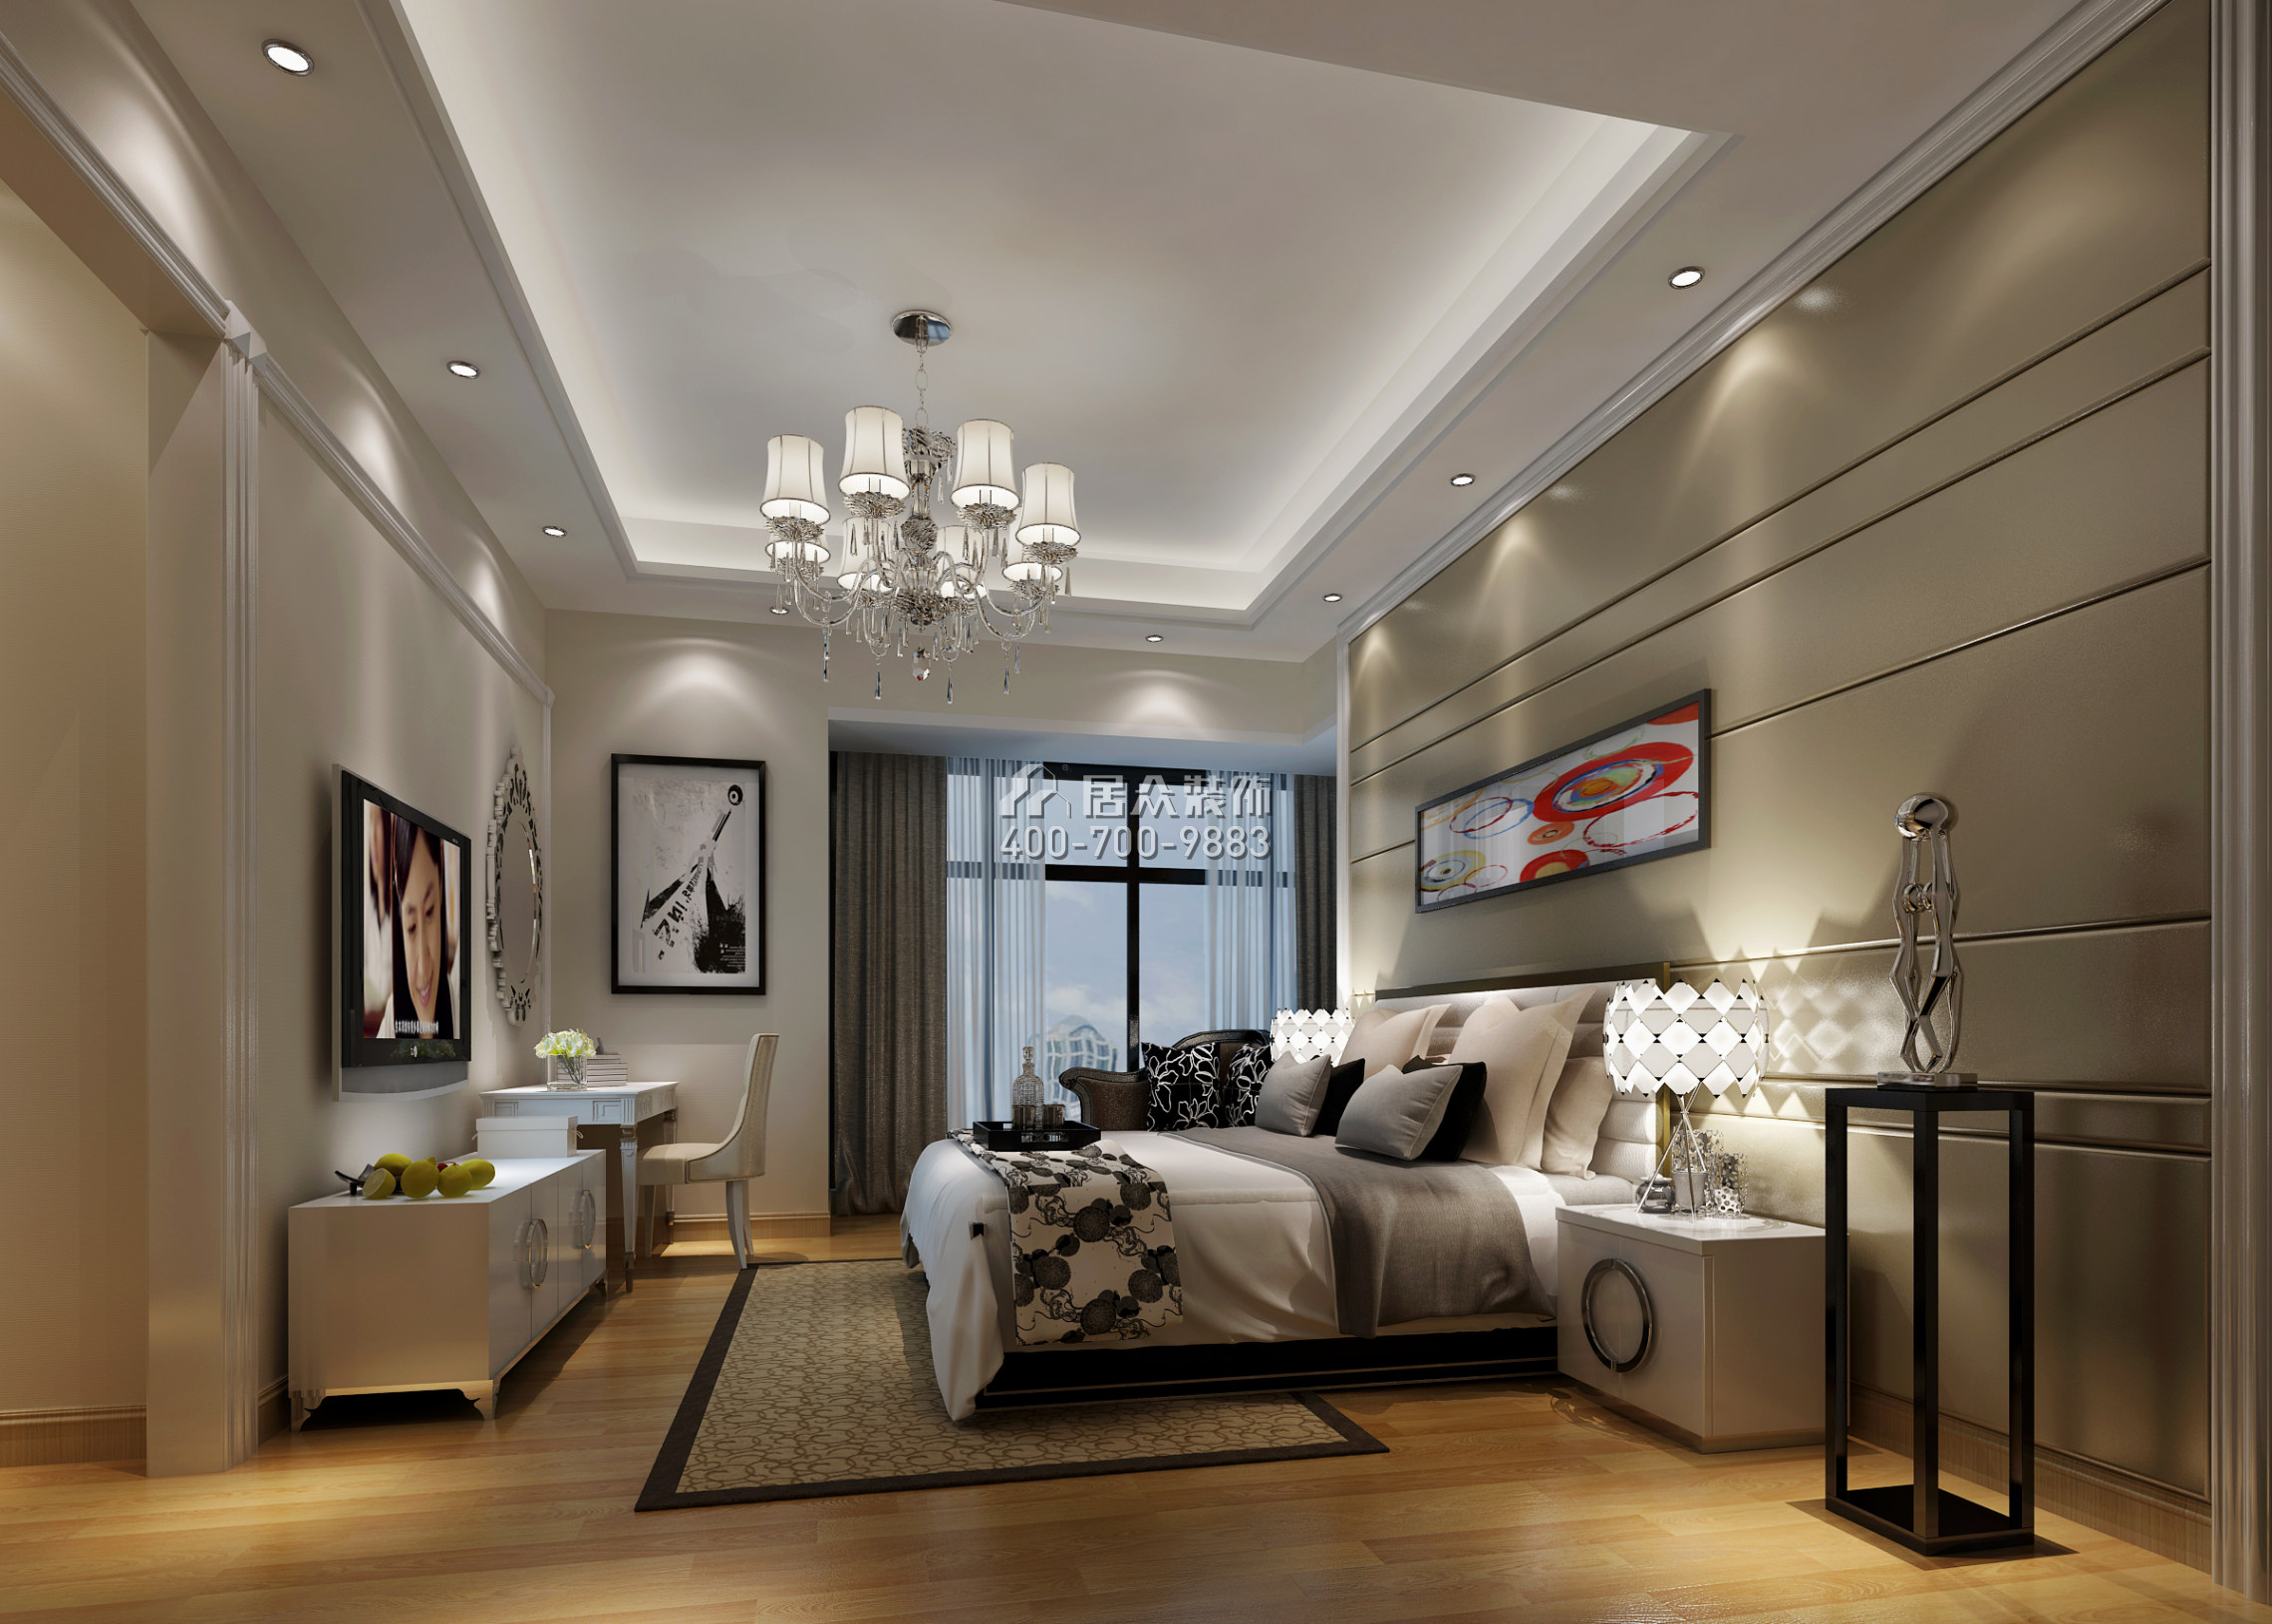 天悦湾170平方米现代简约风格平层户型卧室装修效果图